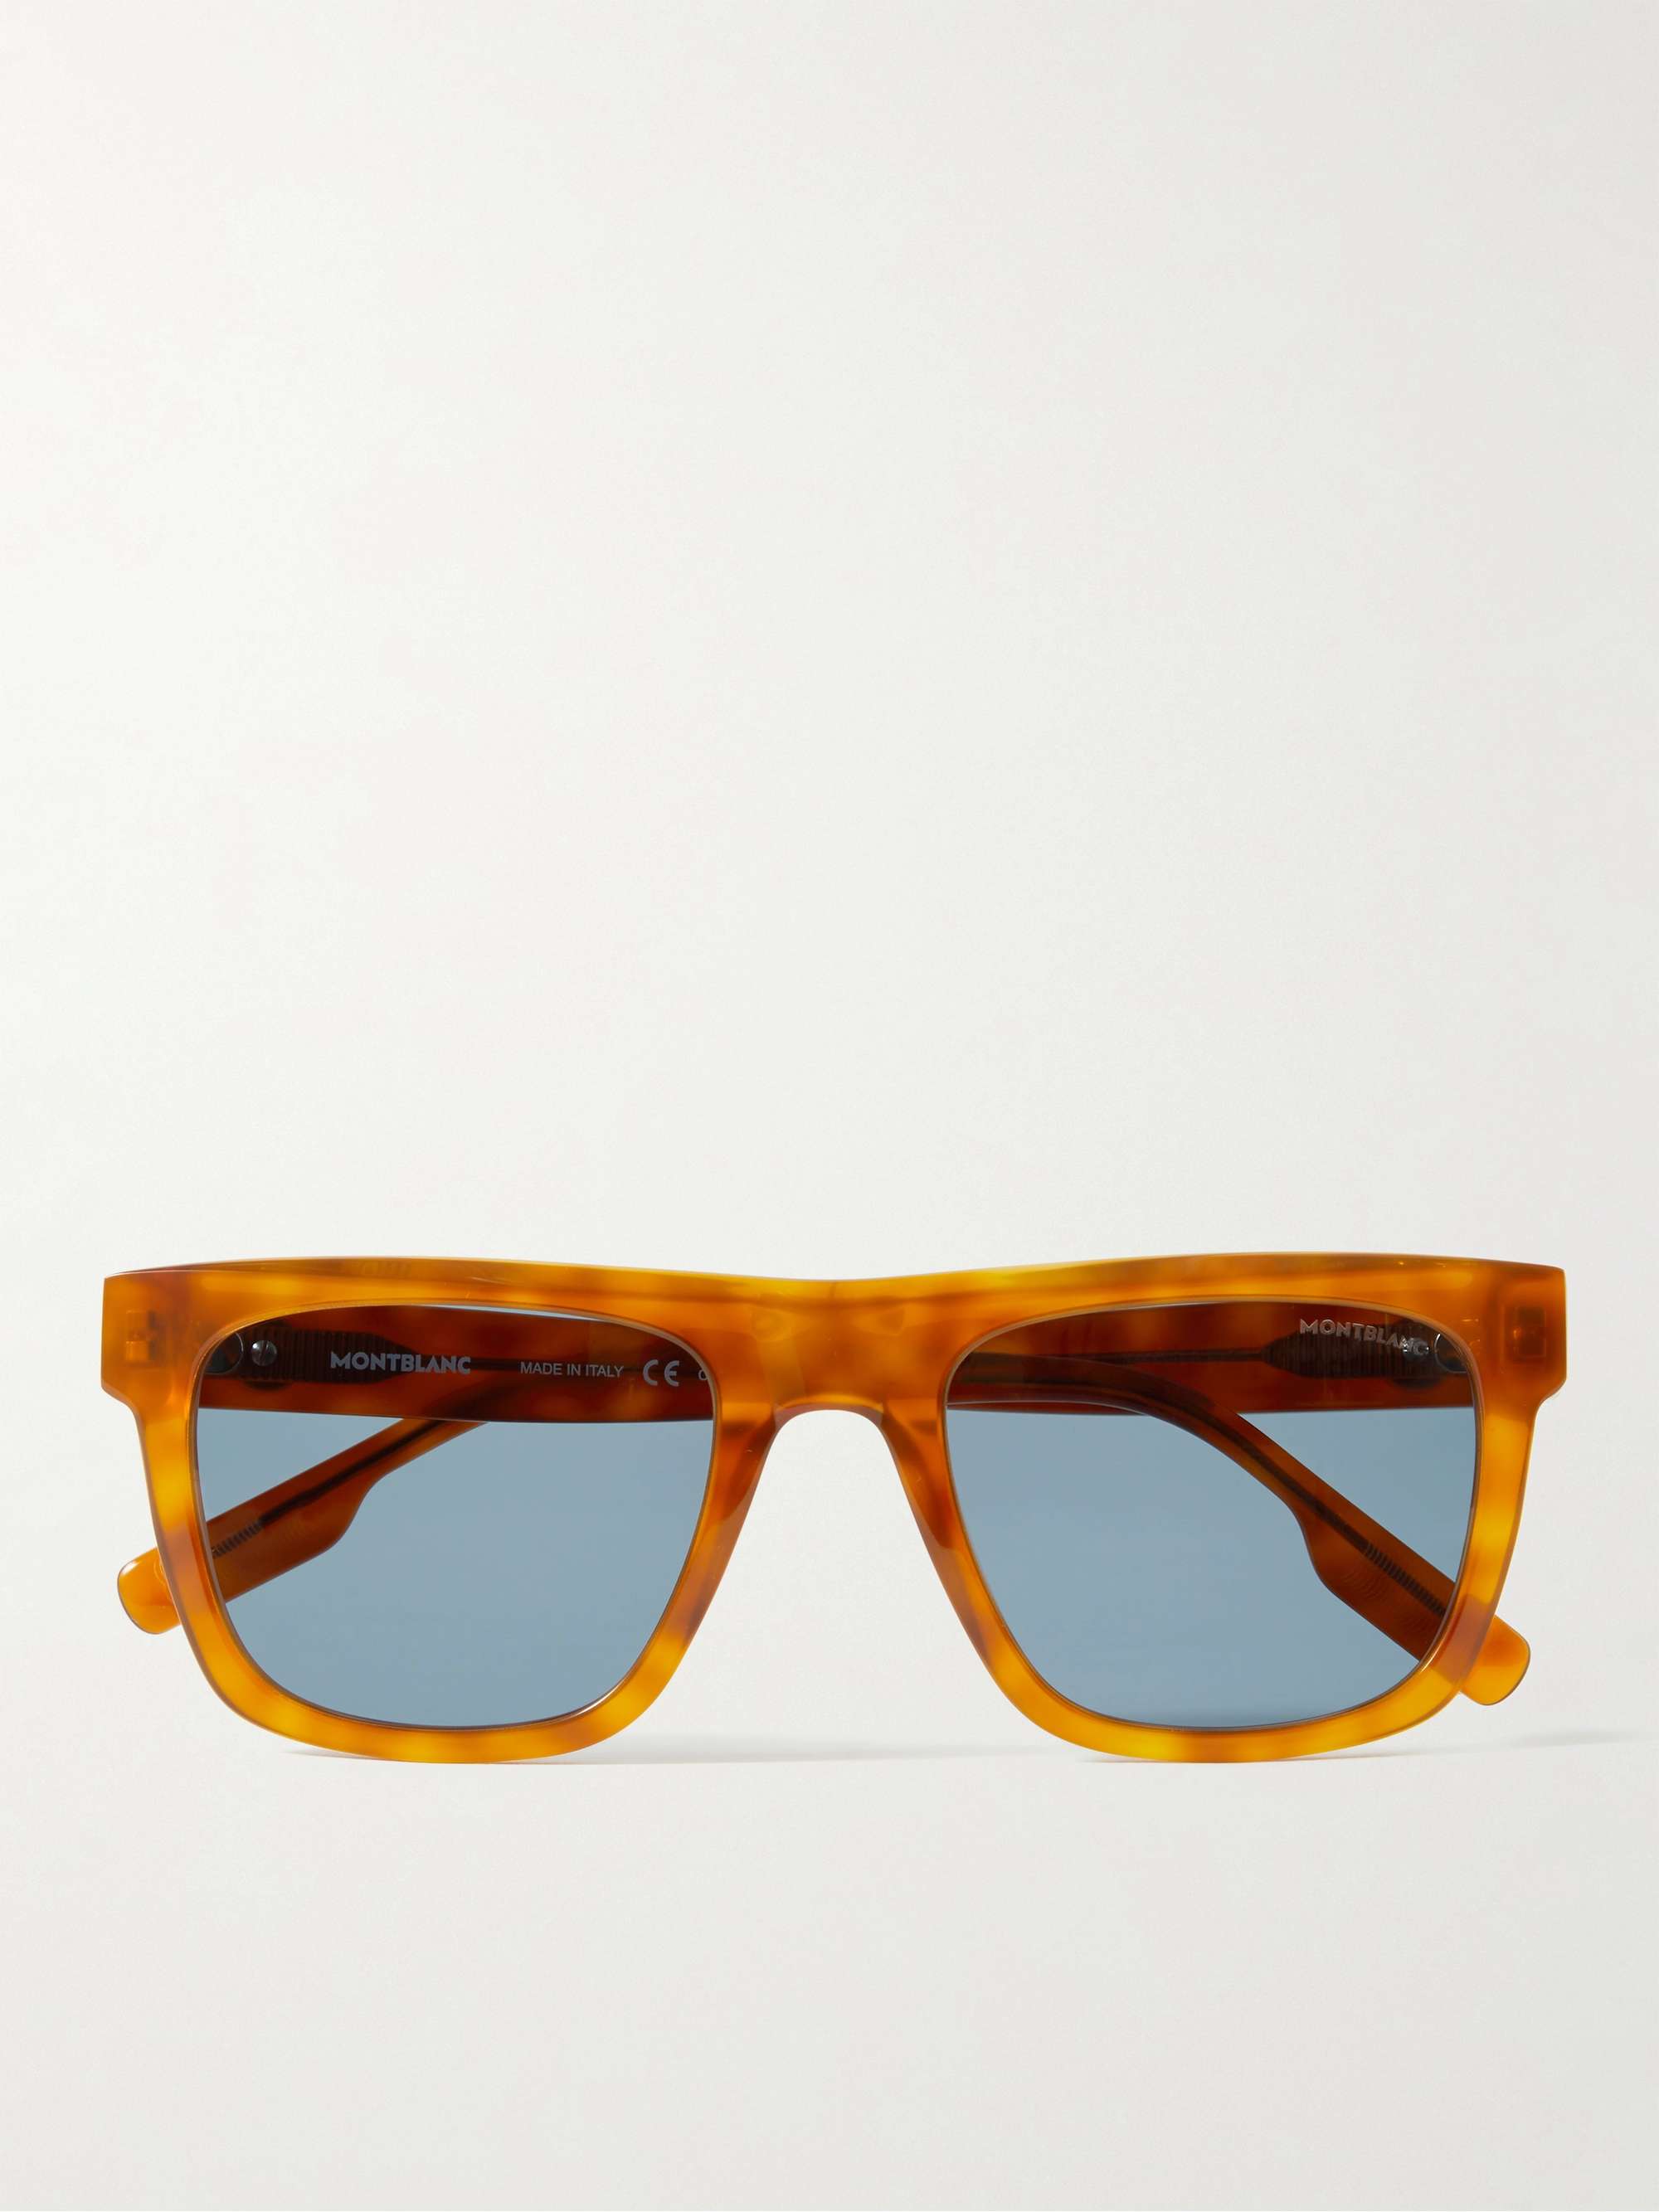 MONTBLANC D- Frame Tortoiseshell Acetate Sunglasses